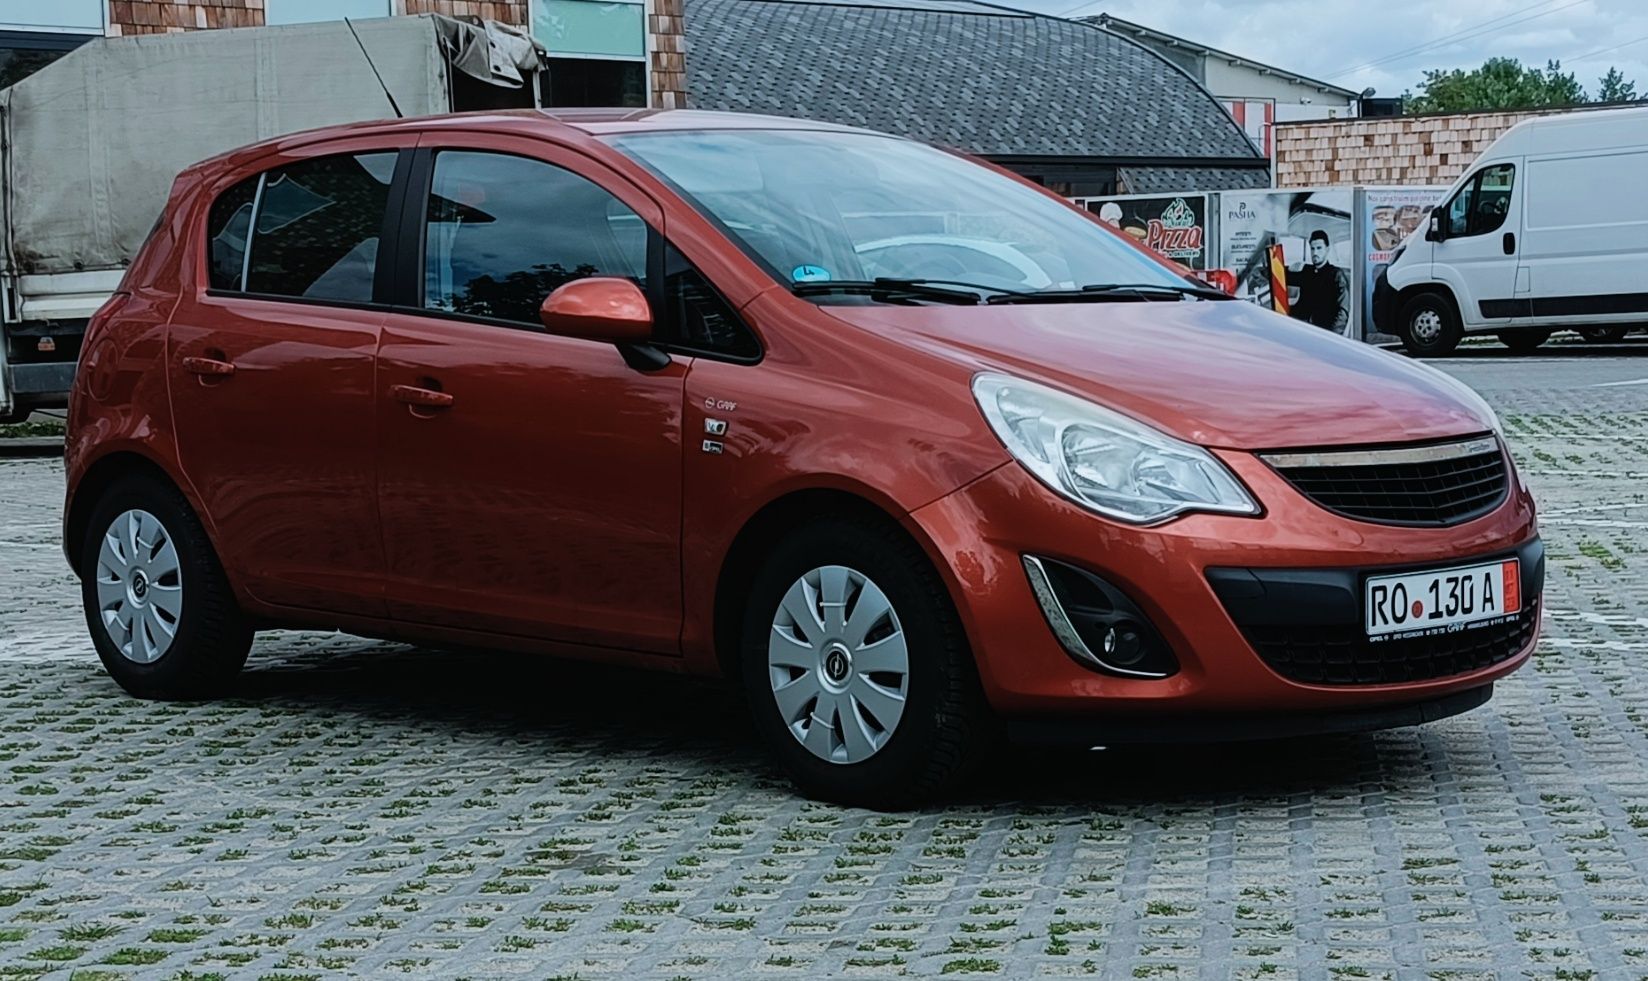 Opel Corsa 2013/1.4 Mpi/101 HP/Scaune încălzite/Volan încălzit/ Piele